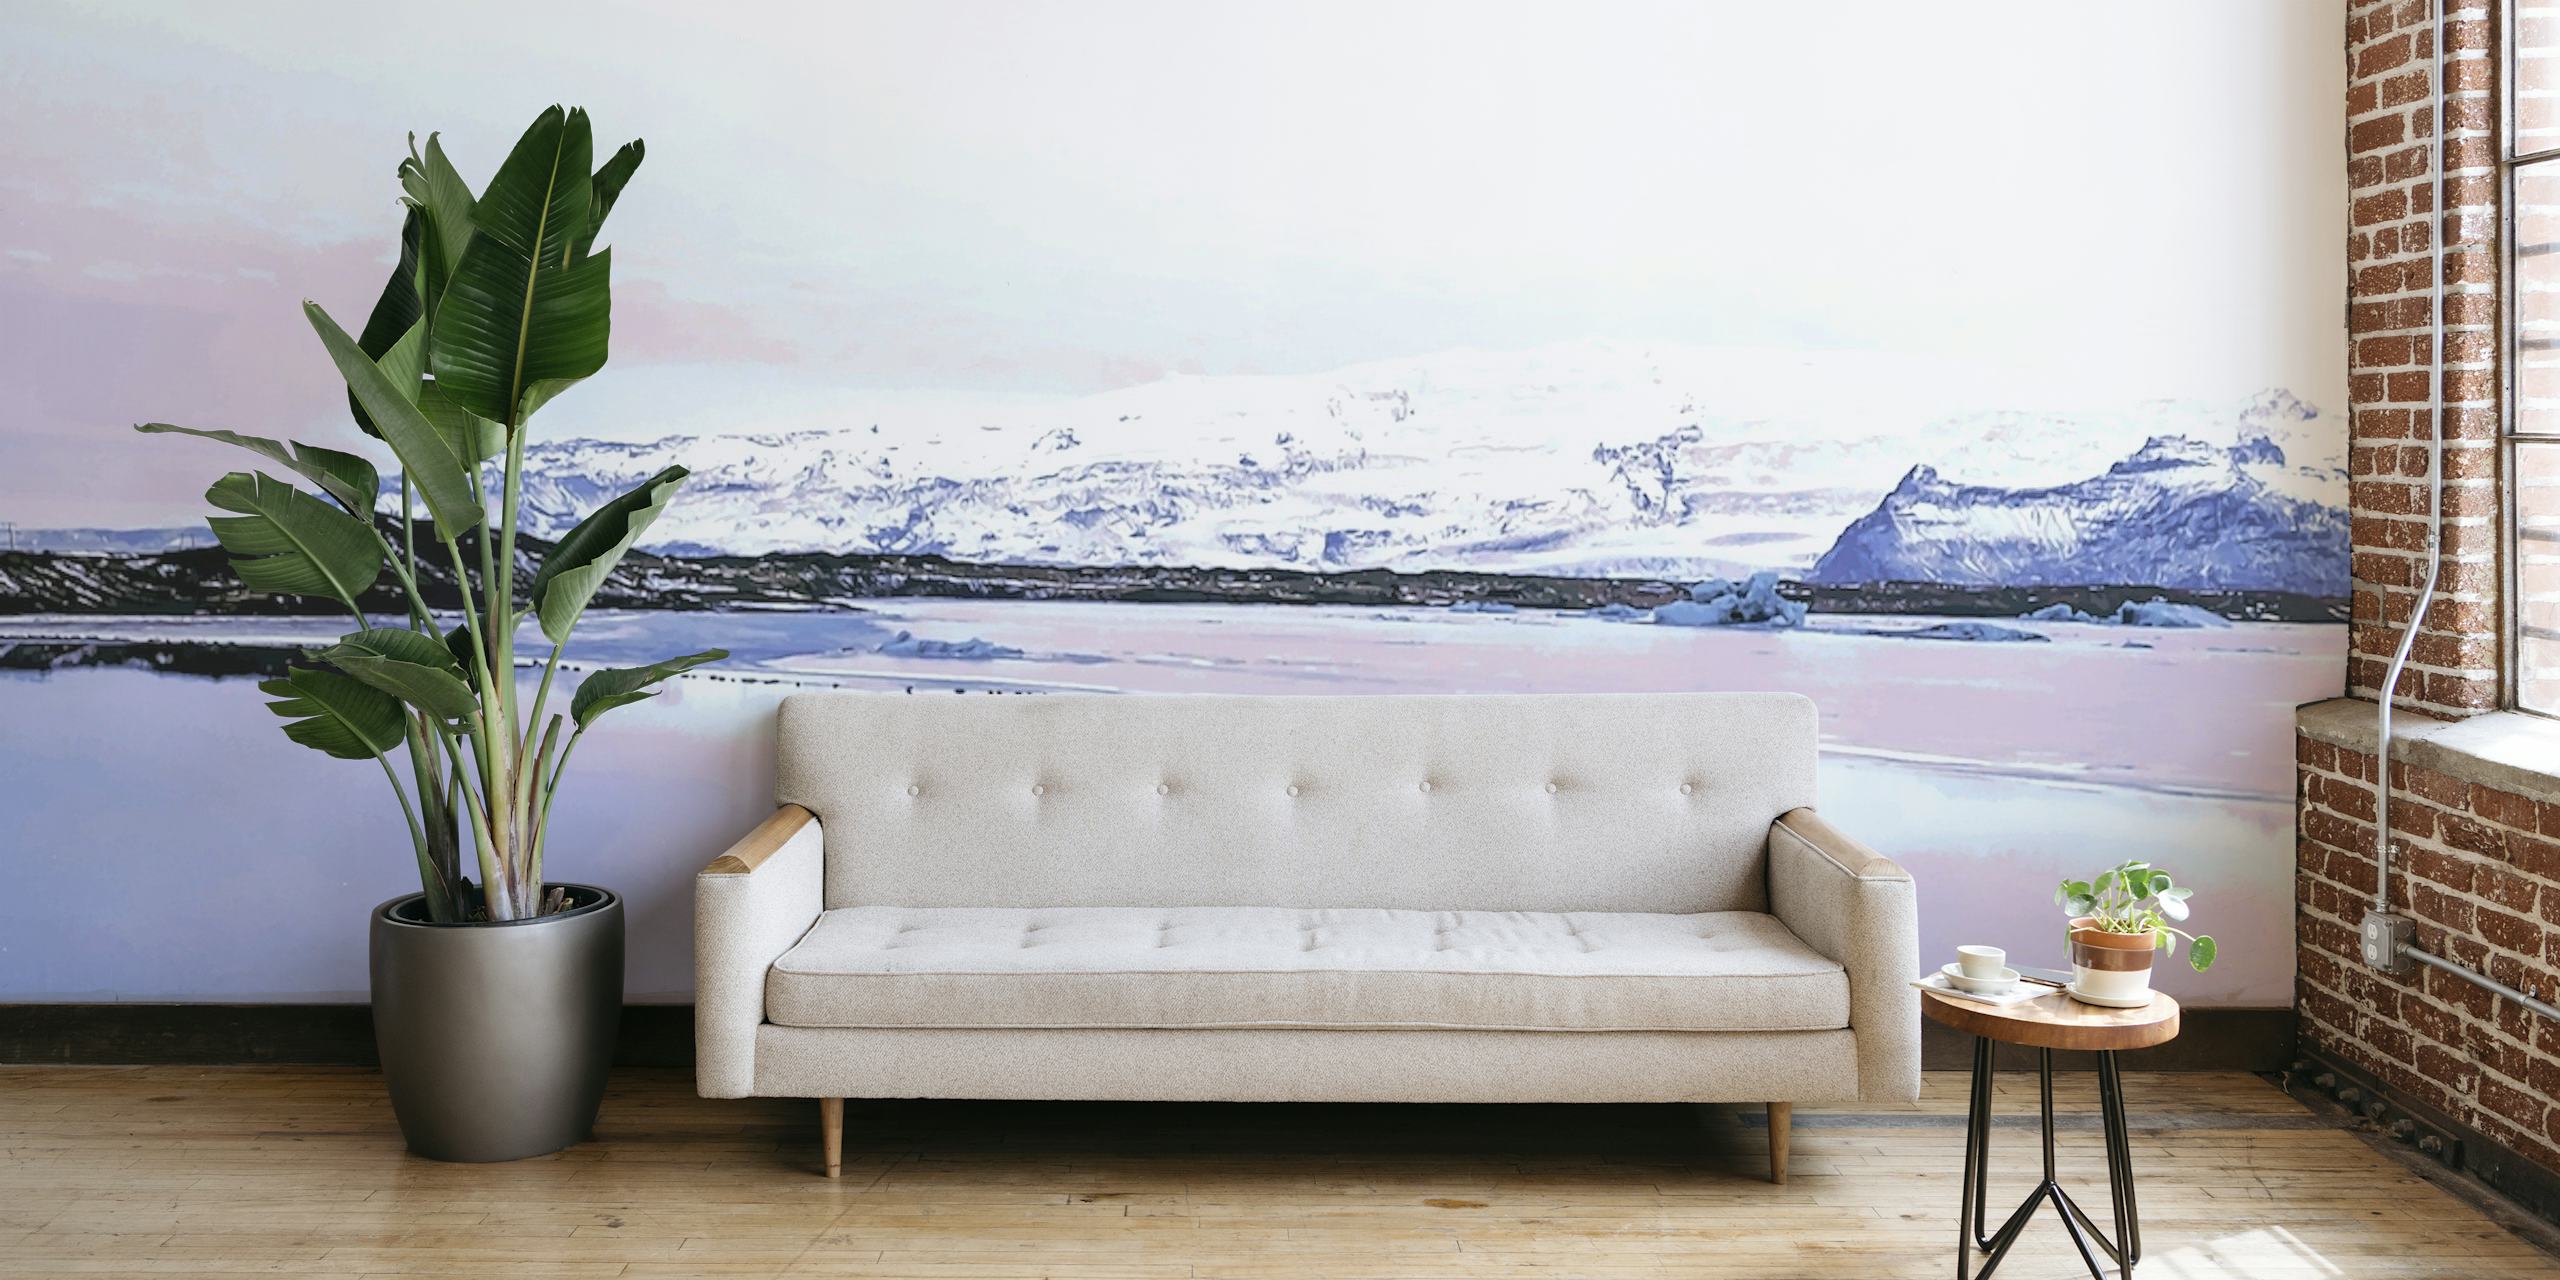 Papier peint paysage islandais avec montagnes enneigées et reflets d'eau